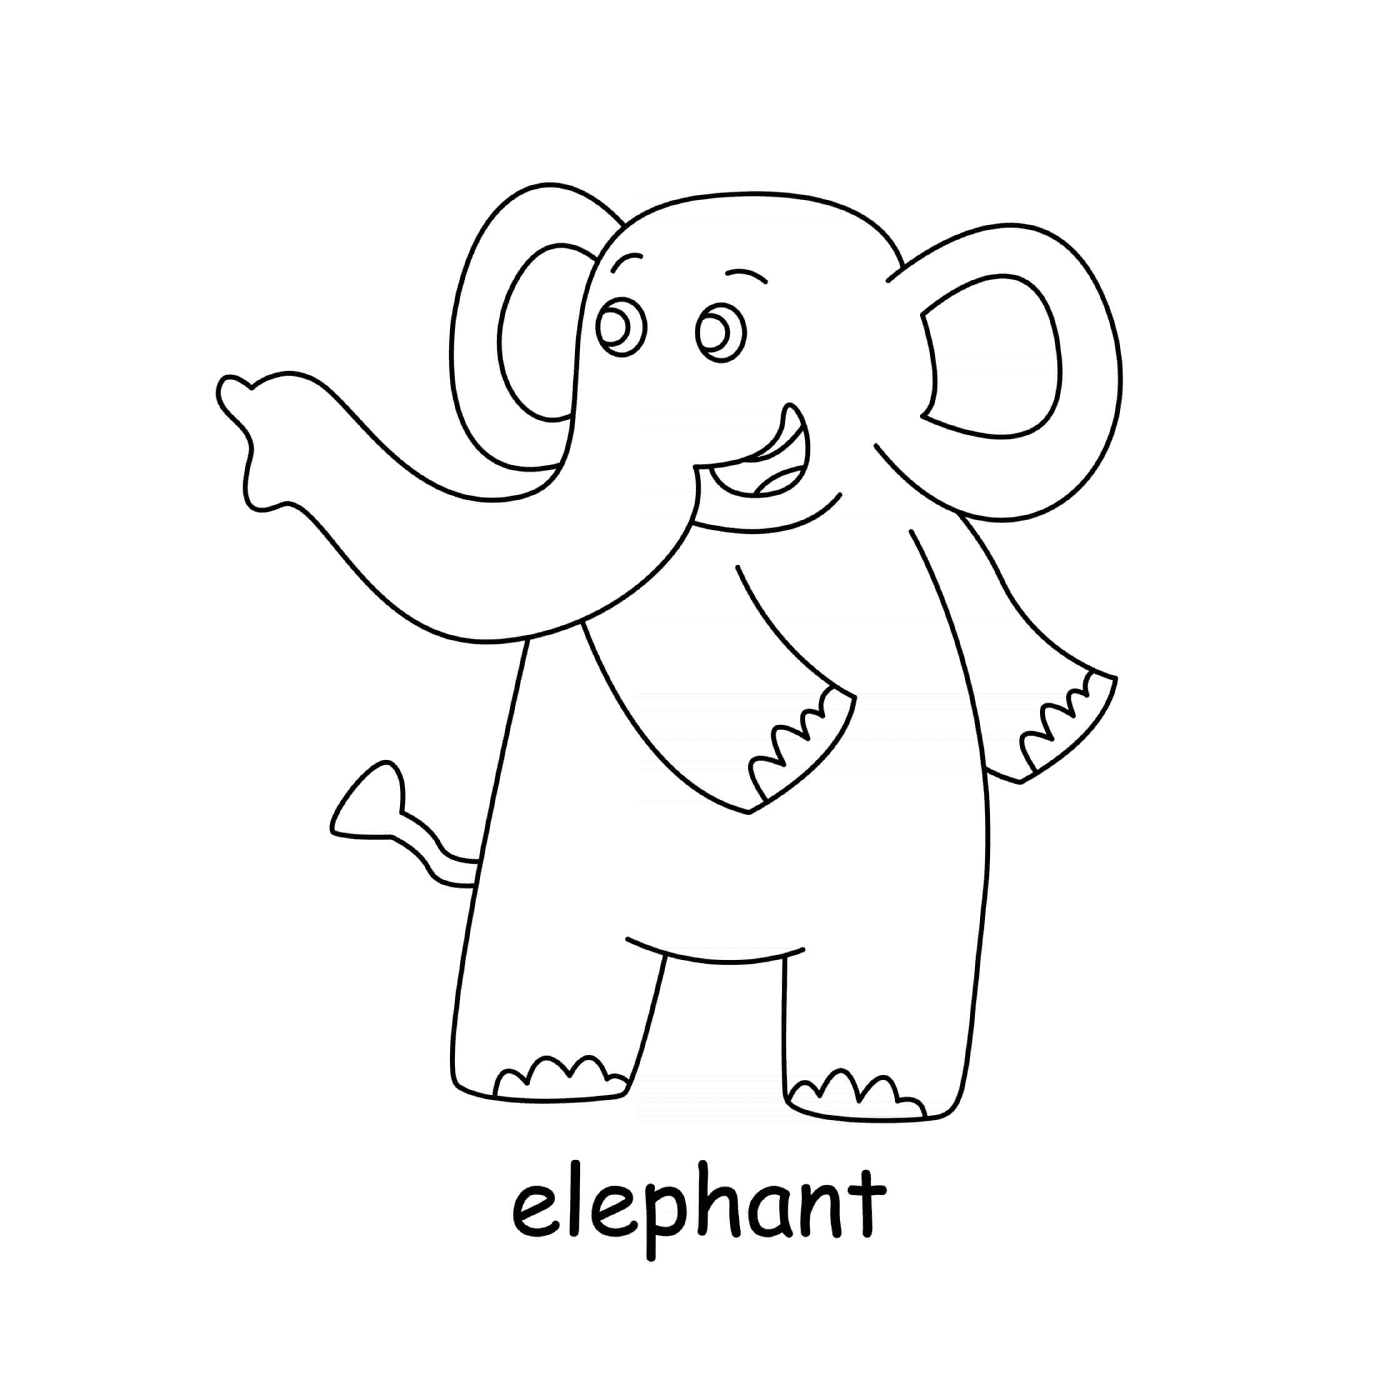  大象指向左边 